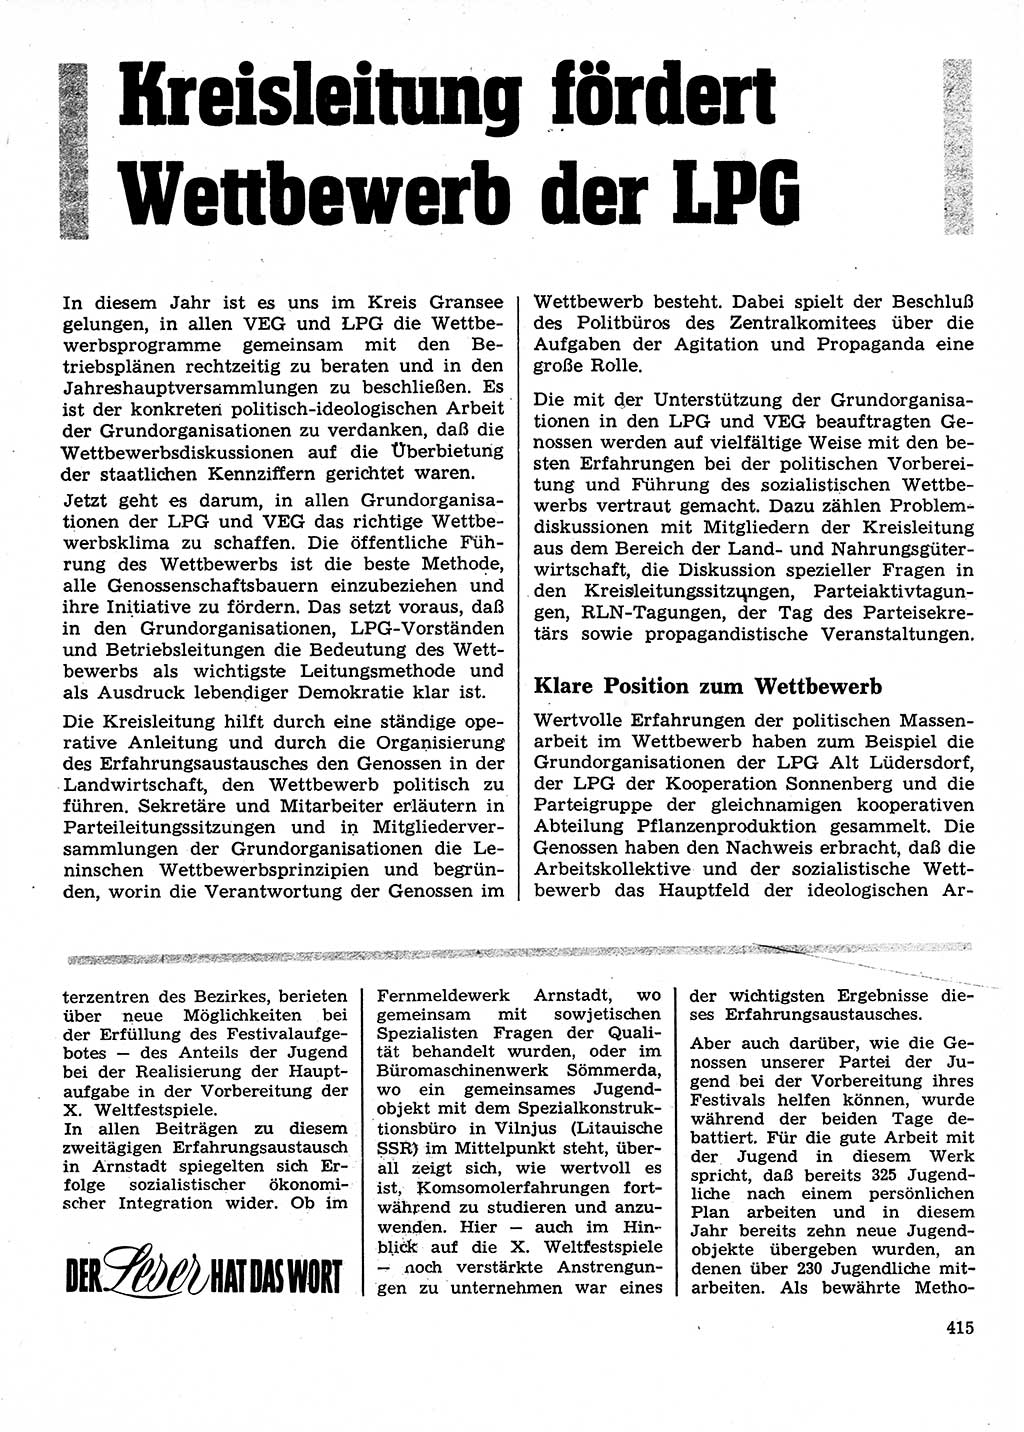 Neuer Weg (NW), Organ des Zentralkomitees (ZK) der SED (Sozialistische Einheitspartei Deutschlands) für Fragen des Parteilebens, 28. Jahrgang [Deutsche Demokratische Republik (DDR)] 1973, Seite 415 (NW ZK SED DDR 1973, S. 415)